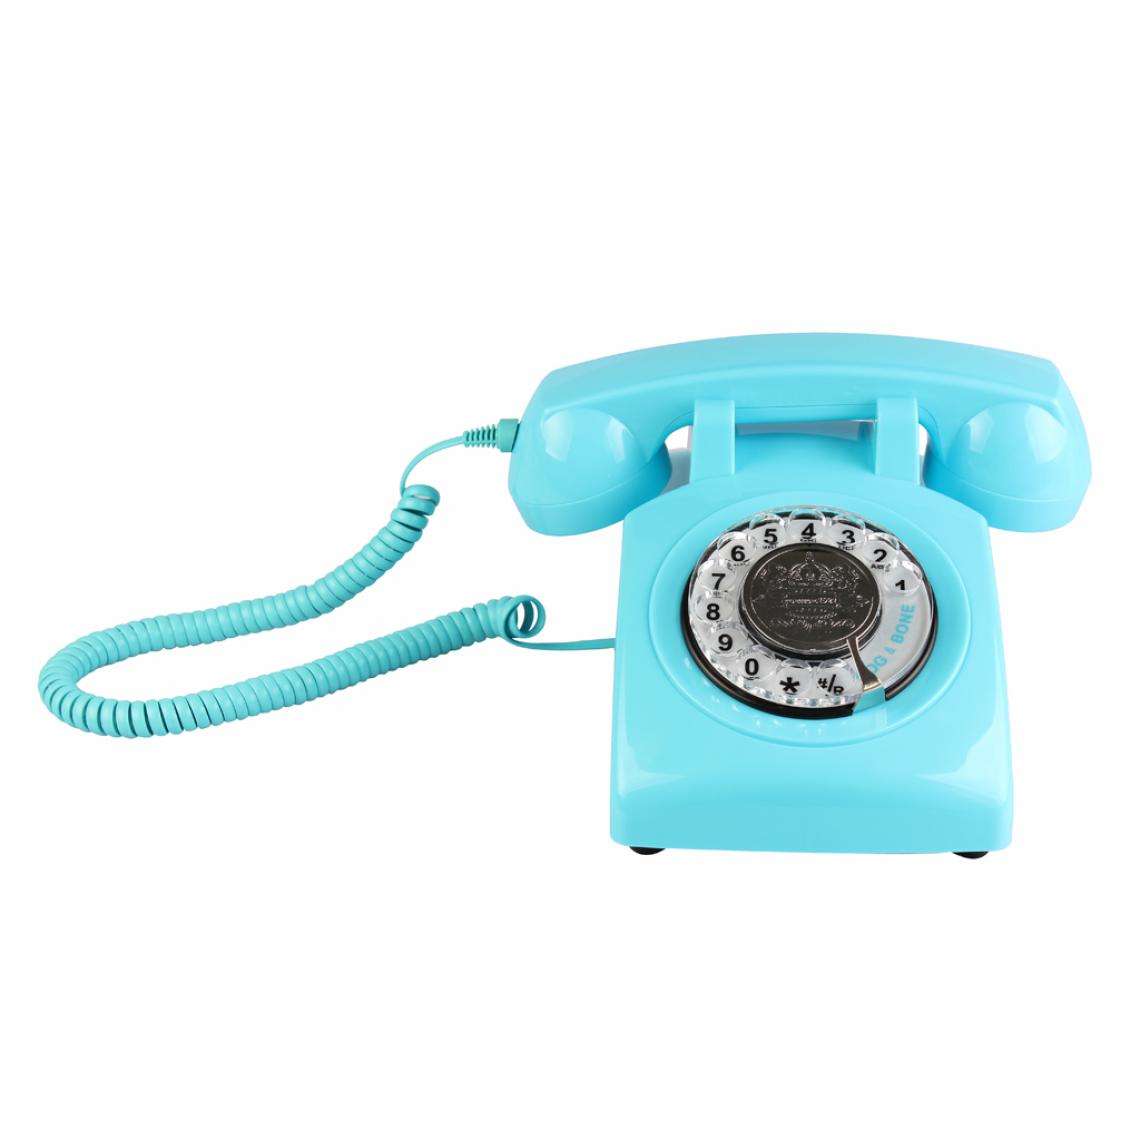 marque generique - Rotary Retro Rotary Dial Téléphone de bureau de Bell bleu - Téléphone fixe filaire